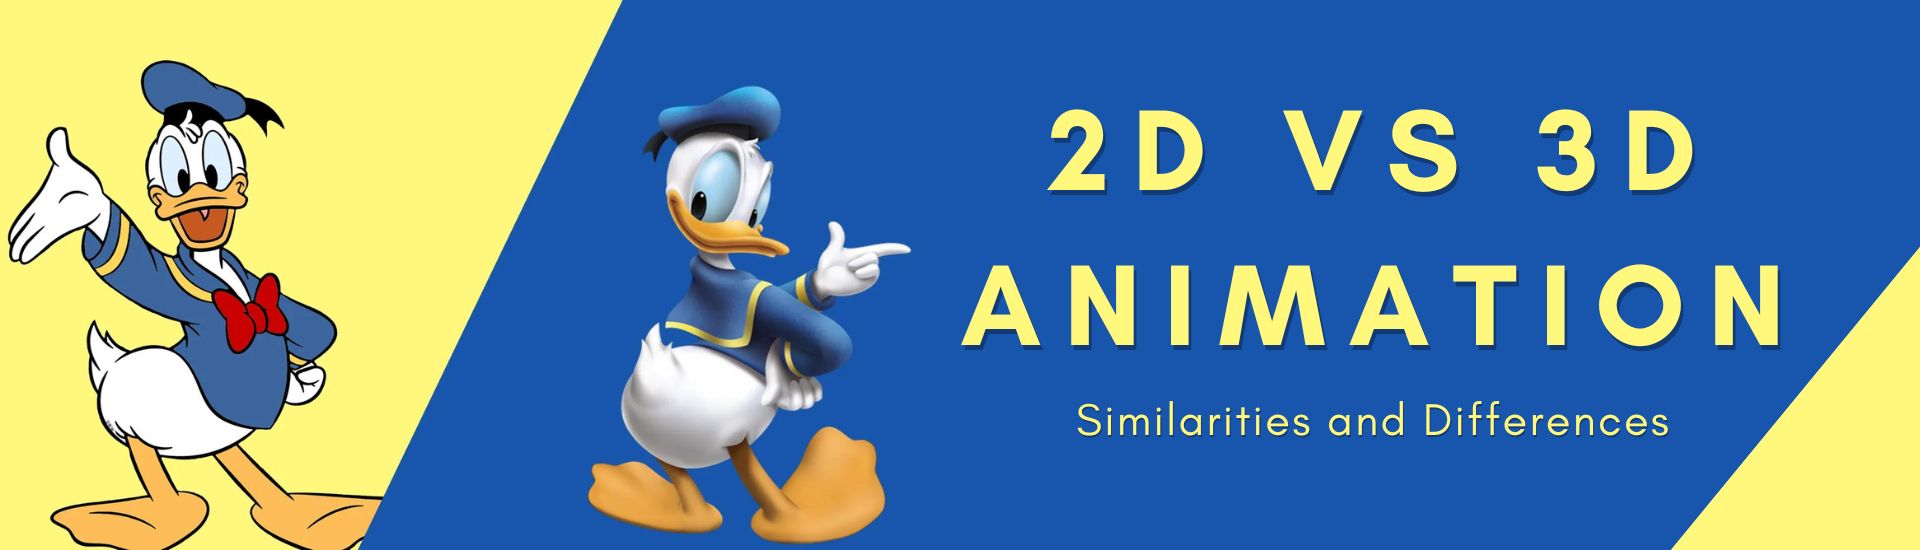 2d vs 3d animation